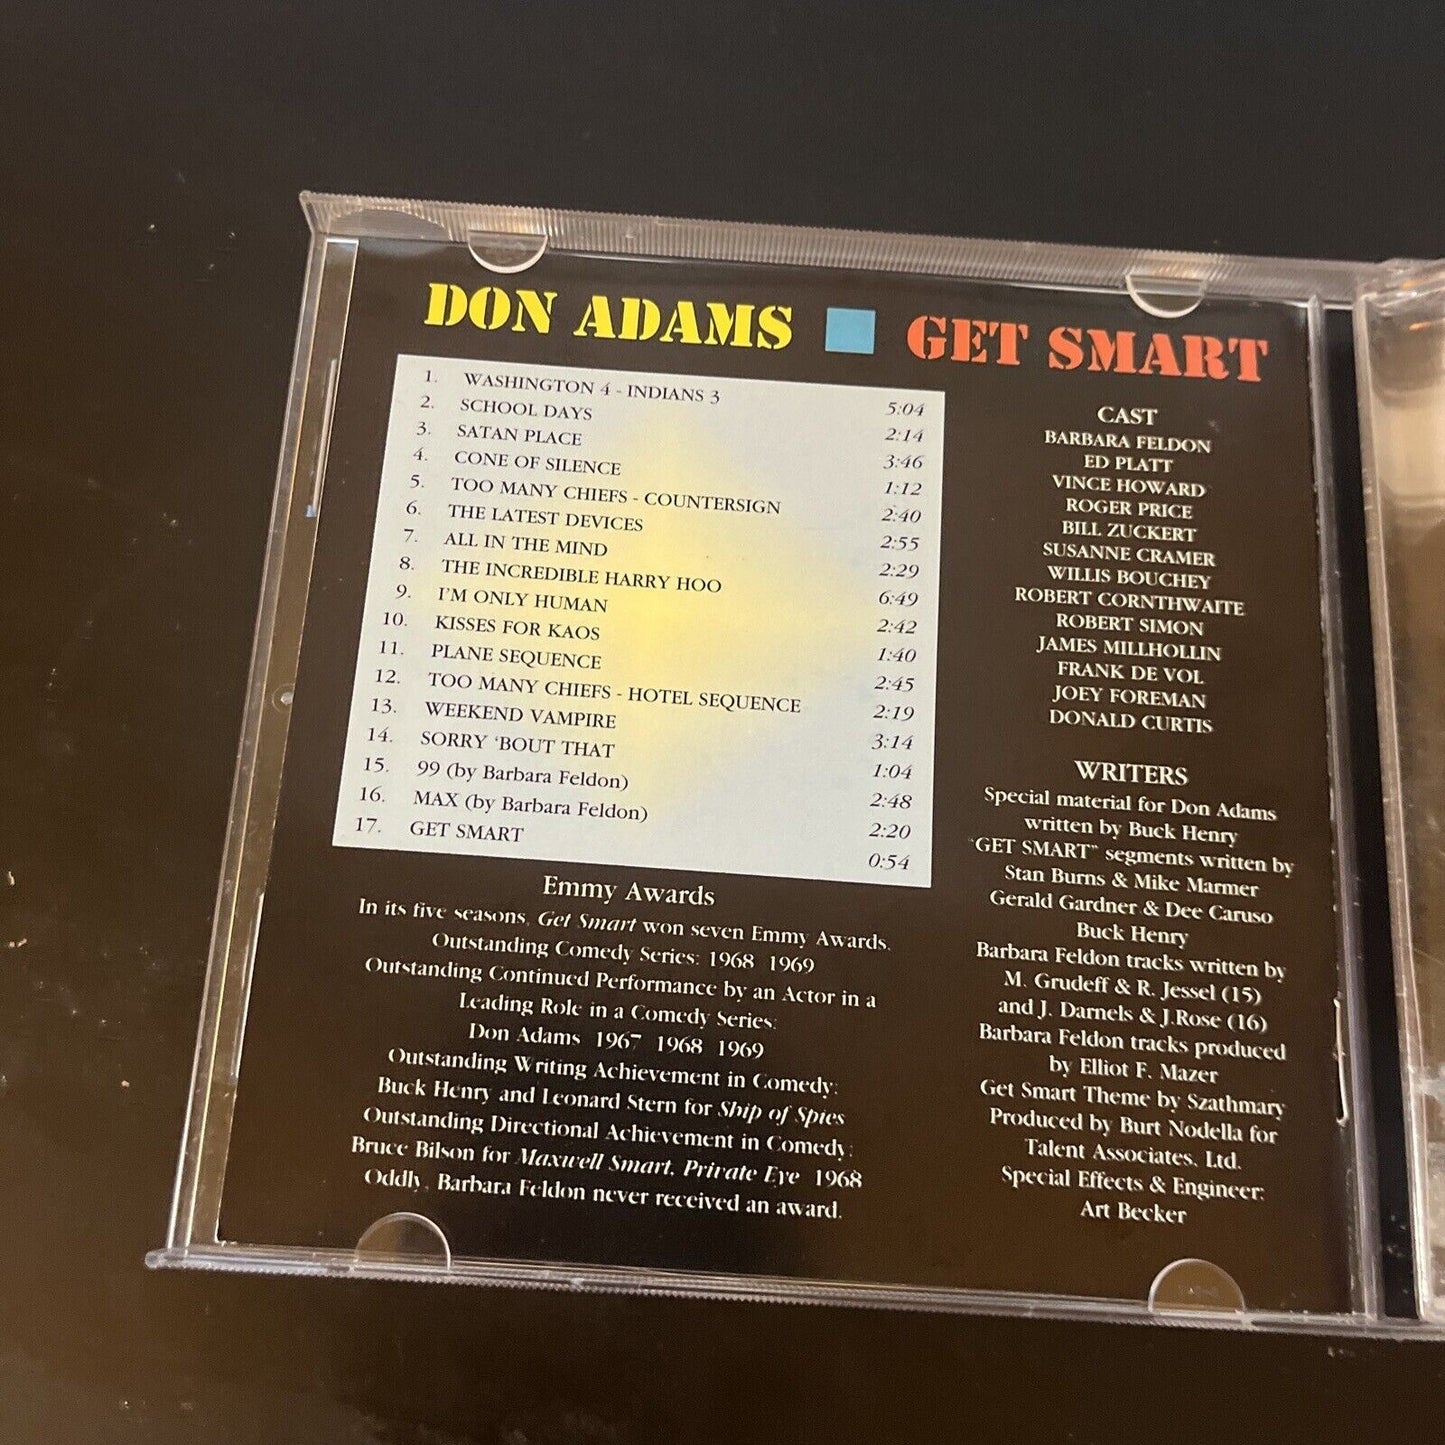 Don Adams - Get Smart (CD, 1965)